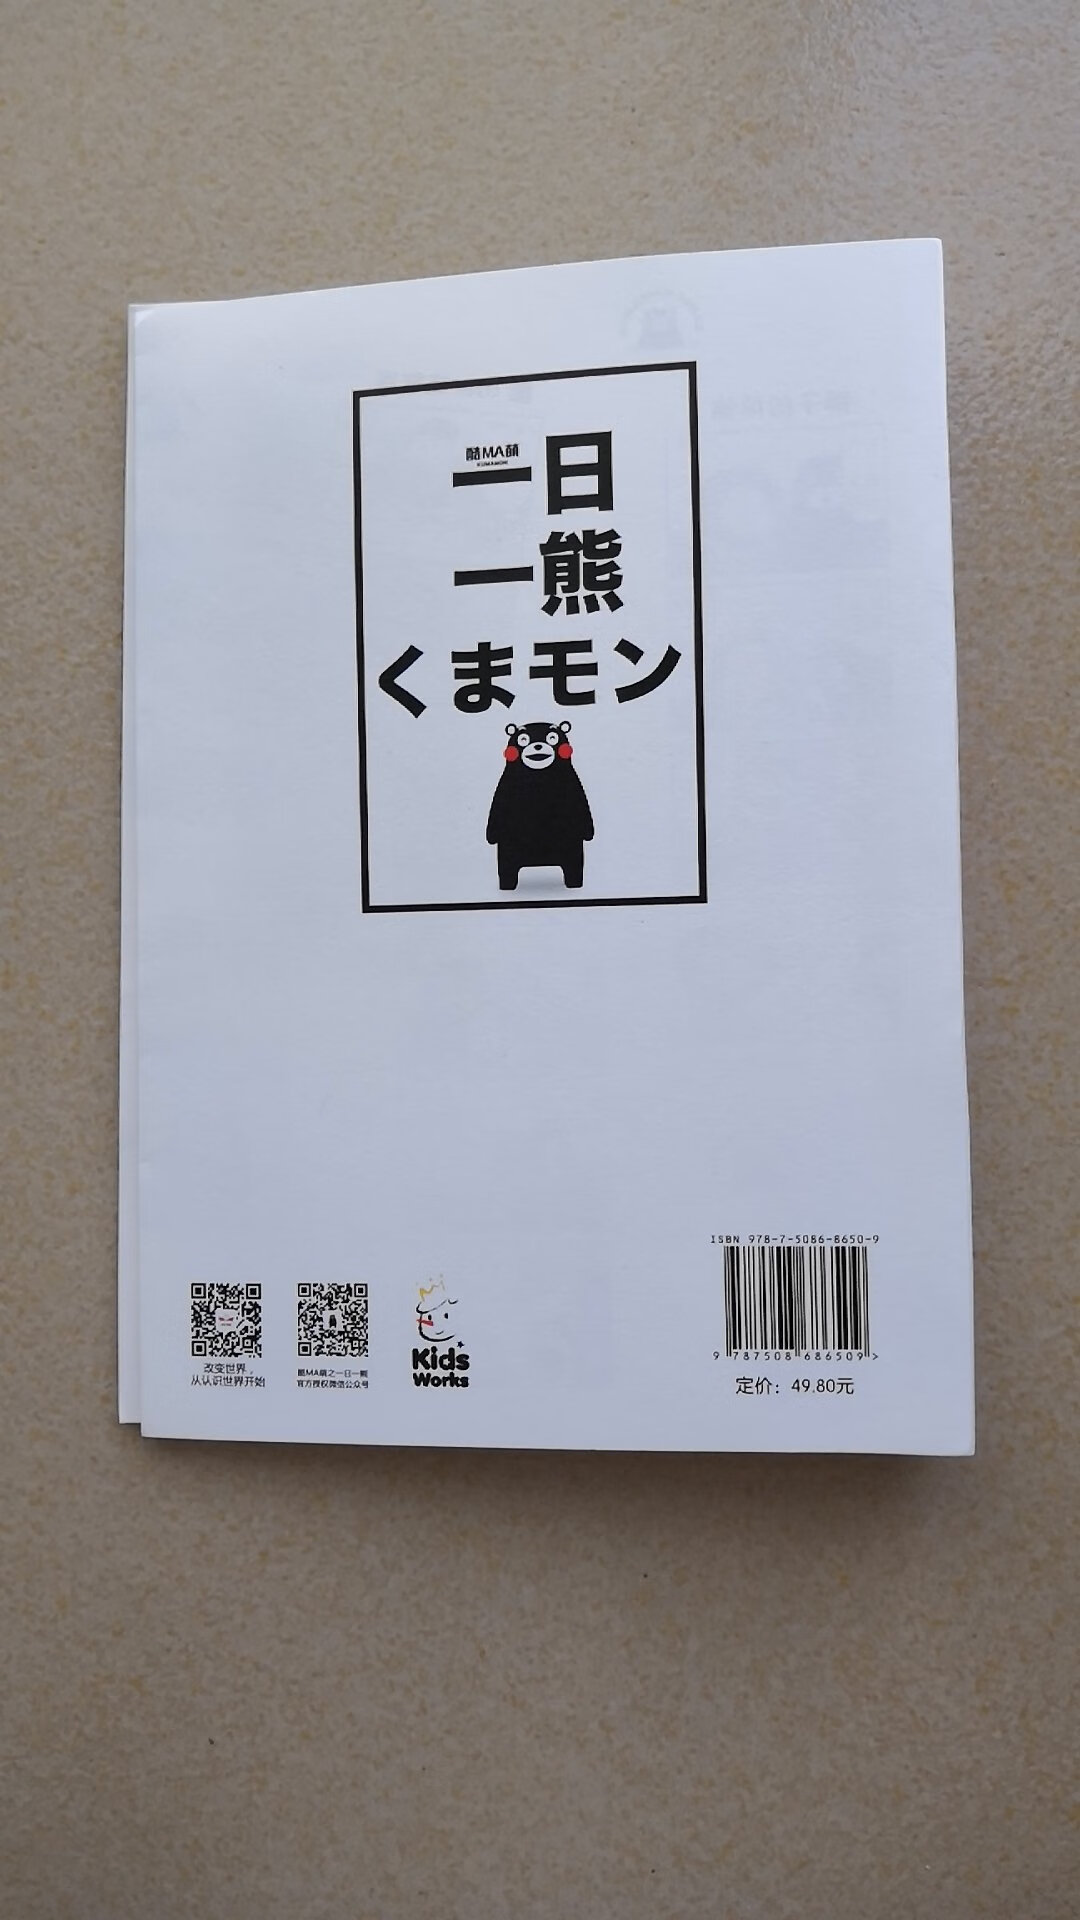 这本书孩子在同学那里看到以后特别的喜欢，一直很想要，这赶上这次活动买下来非常的划算，不是轻松搞笑的内容，是介绍日本的特产及特殊节日的书。